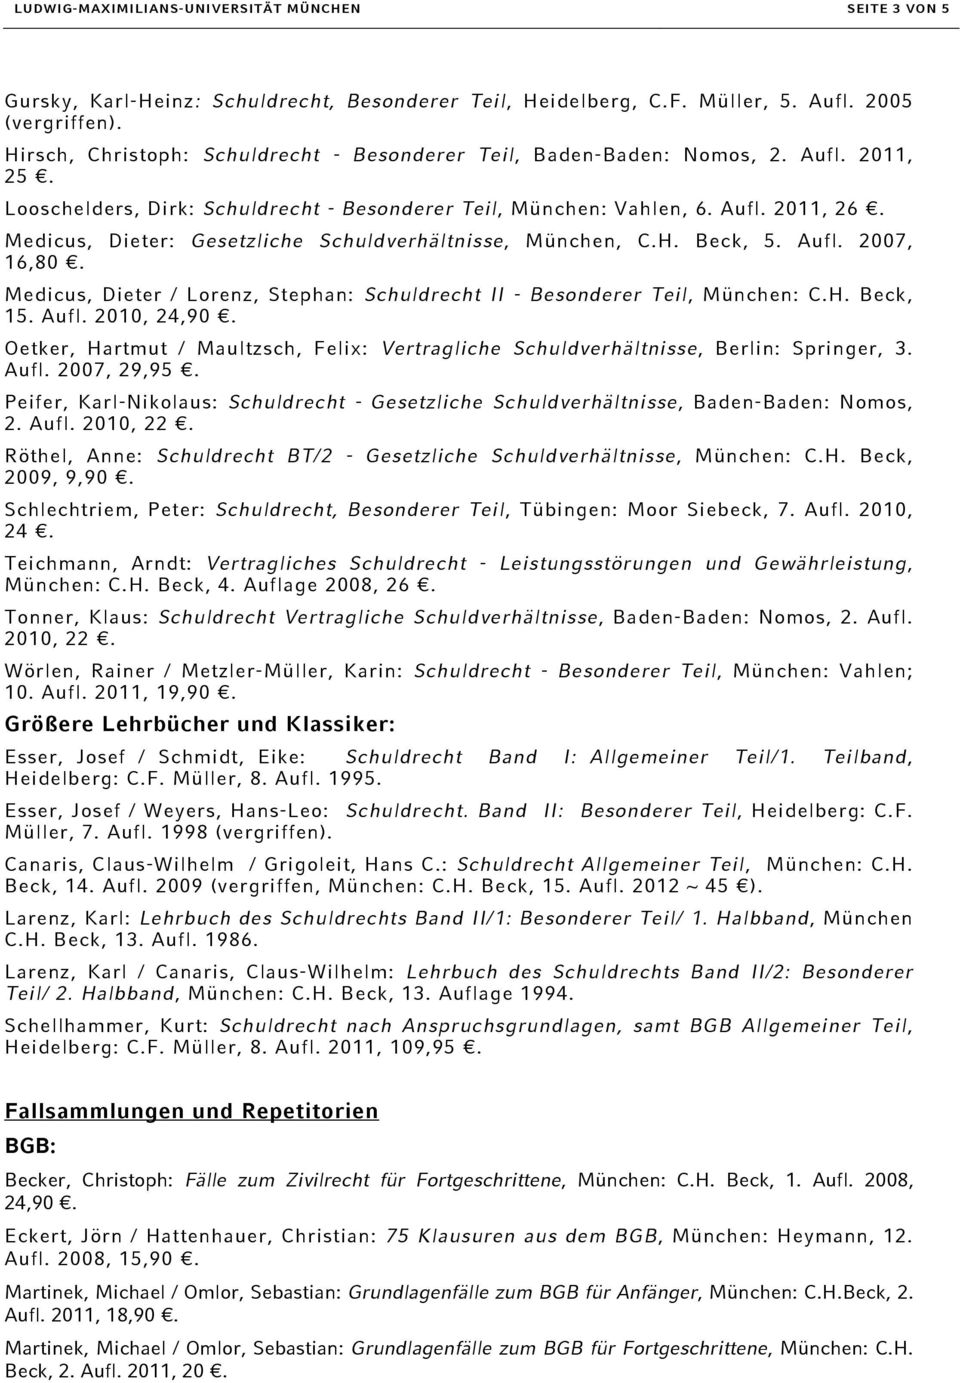 Medicus, Dieter: Gesetzliche Schuldverhältnisse, München, C.H. Beck, 5. Aufl. 2007, 16,80. Medicus, Dieter / Lorenz, Stephan: Schuldrecht II - Besonderer Teil, München: C.H. Beck, 15. Aufl. 2010, 24,90.